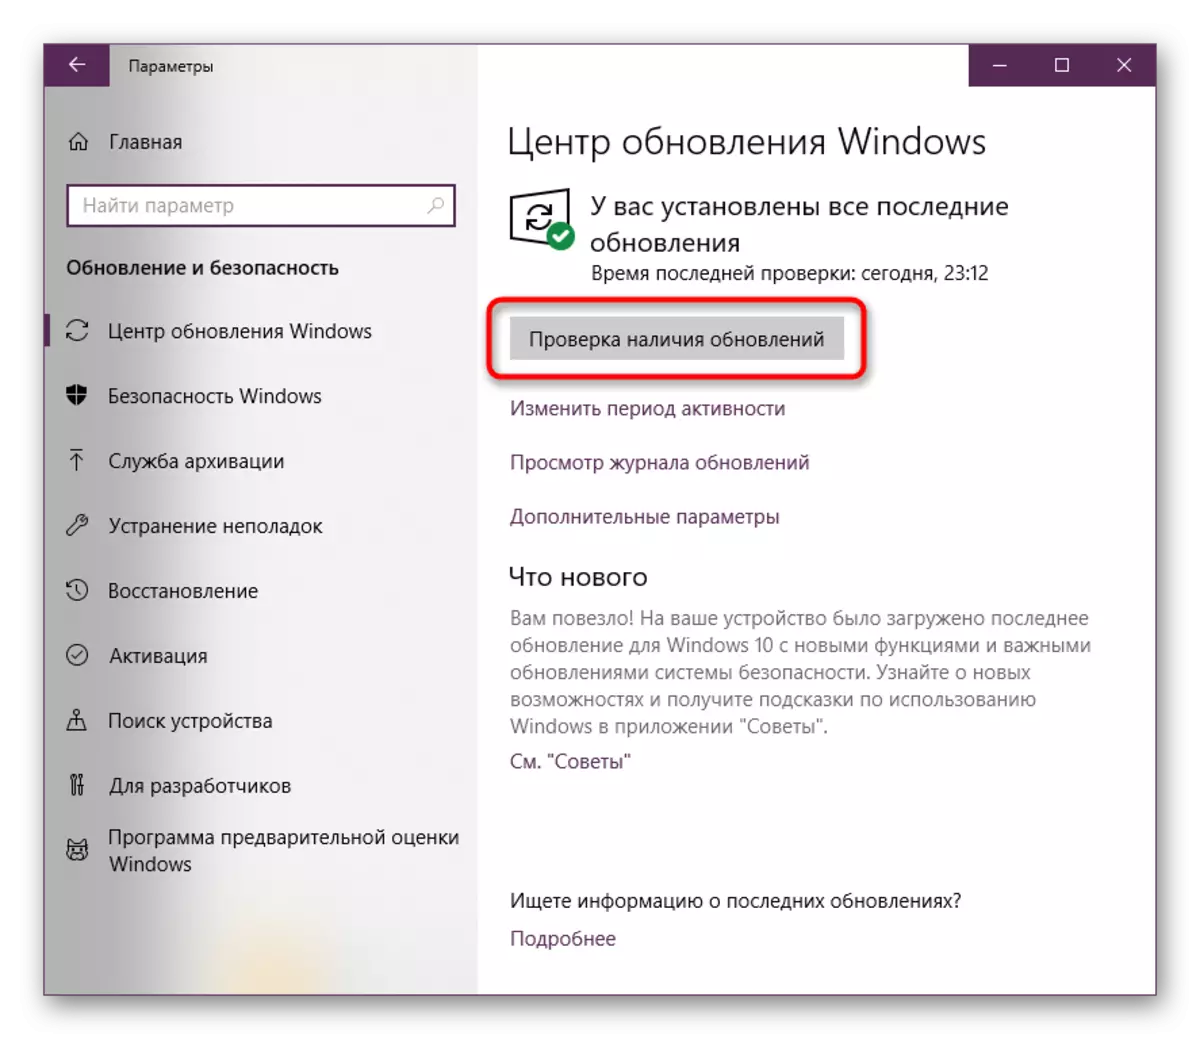 Sprawdź dostępność w systemie Windows 10